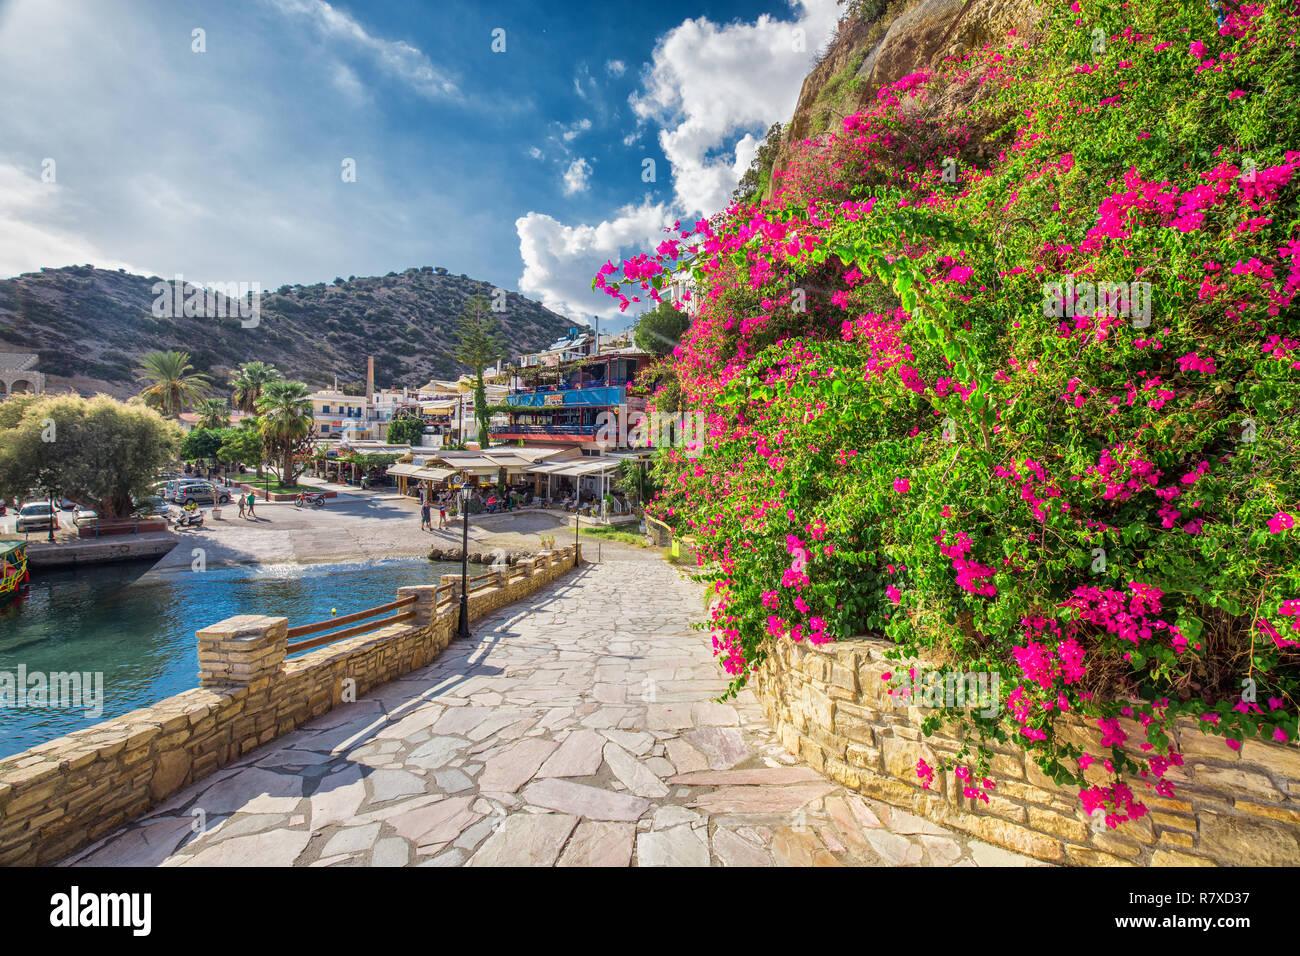 AGIA GALINI, le Creta - 14 octobre 2018 - Vieille ville de Agial Galini avec de belles fleurs, maisons colorées et de l'océan, le Creta, Grèce, Europe. Banque D'Images